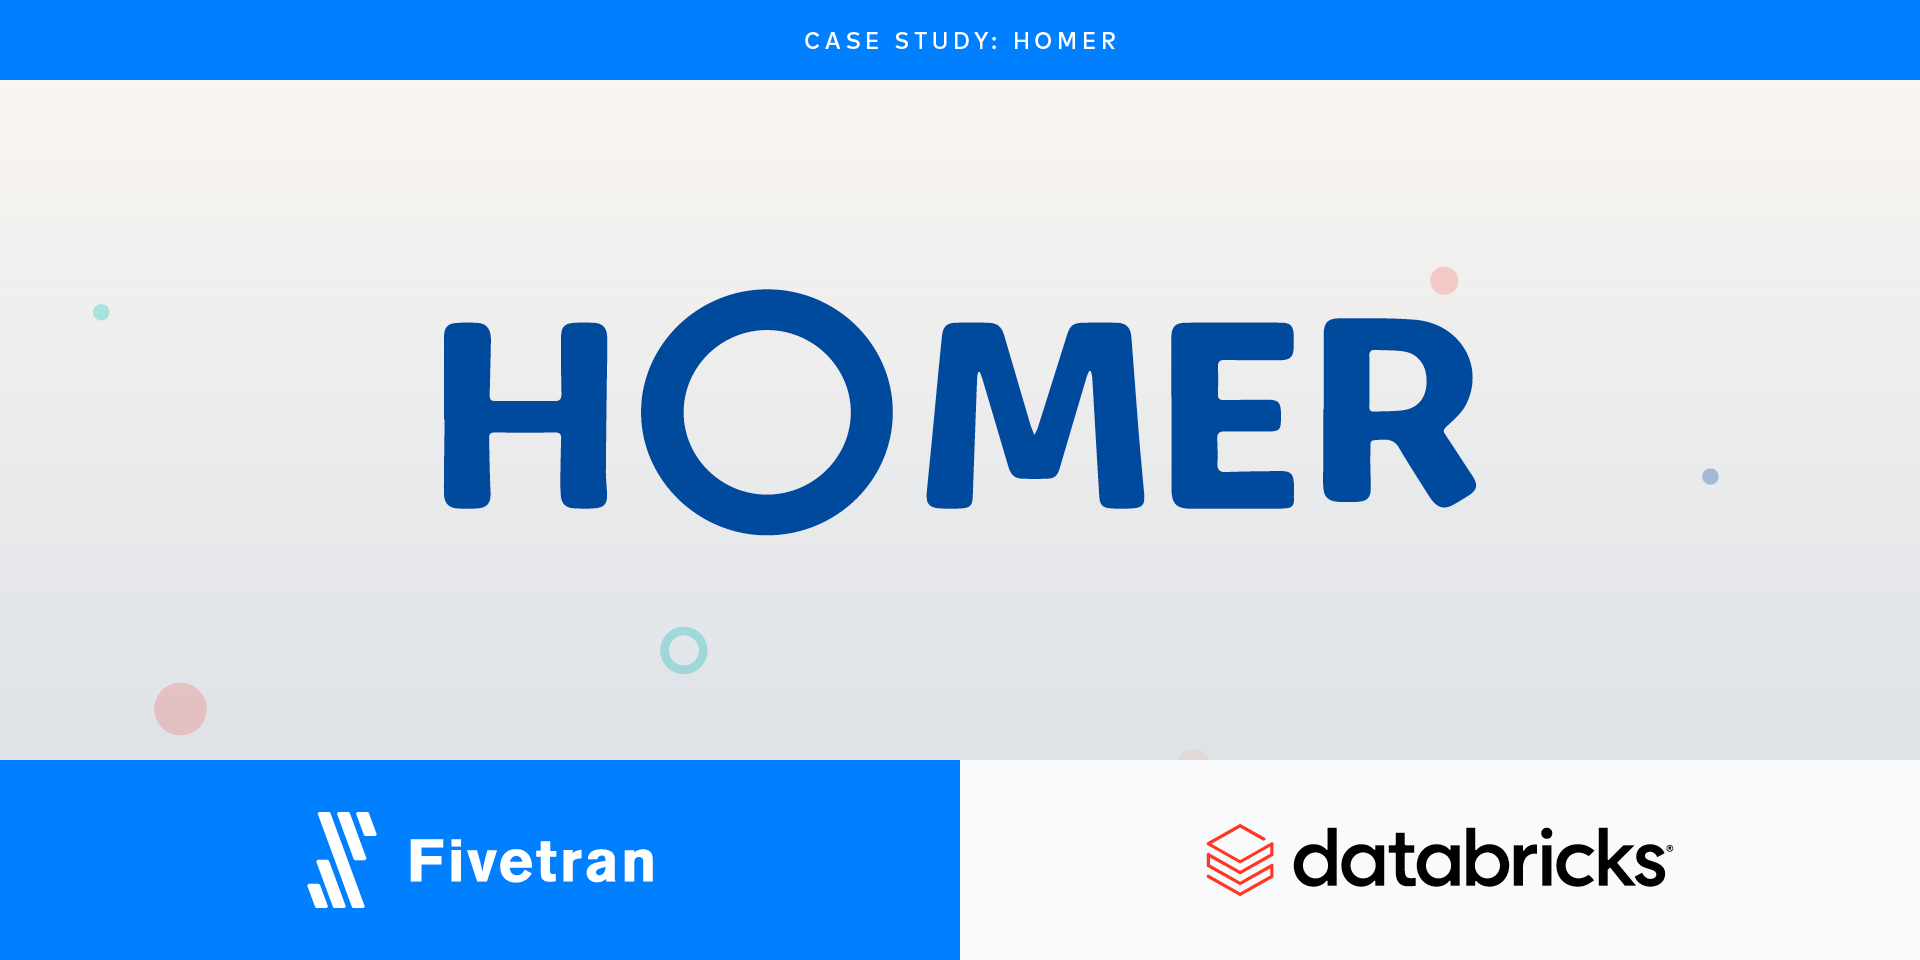 Fivetran unlocks the power of Stripe data for HOMER